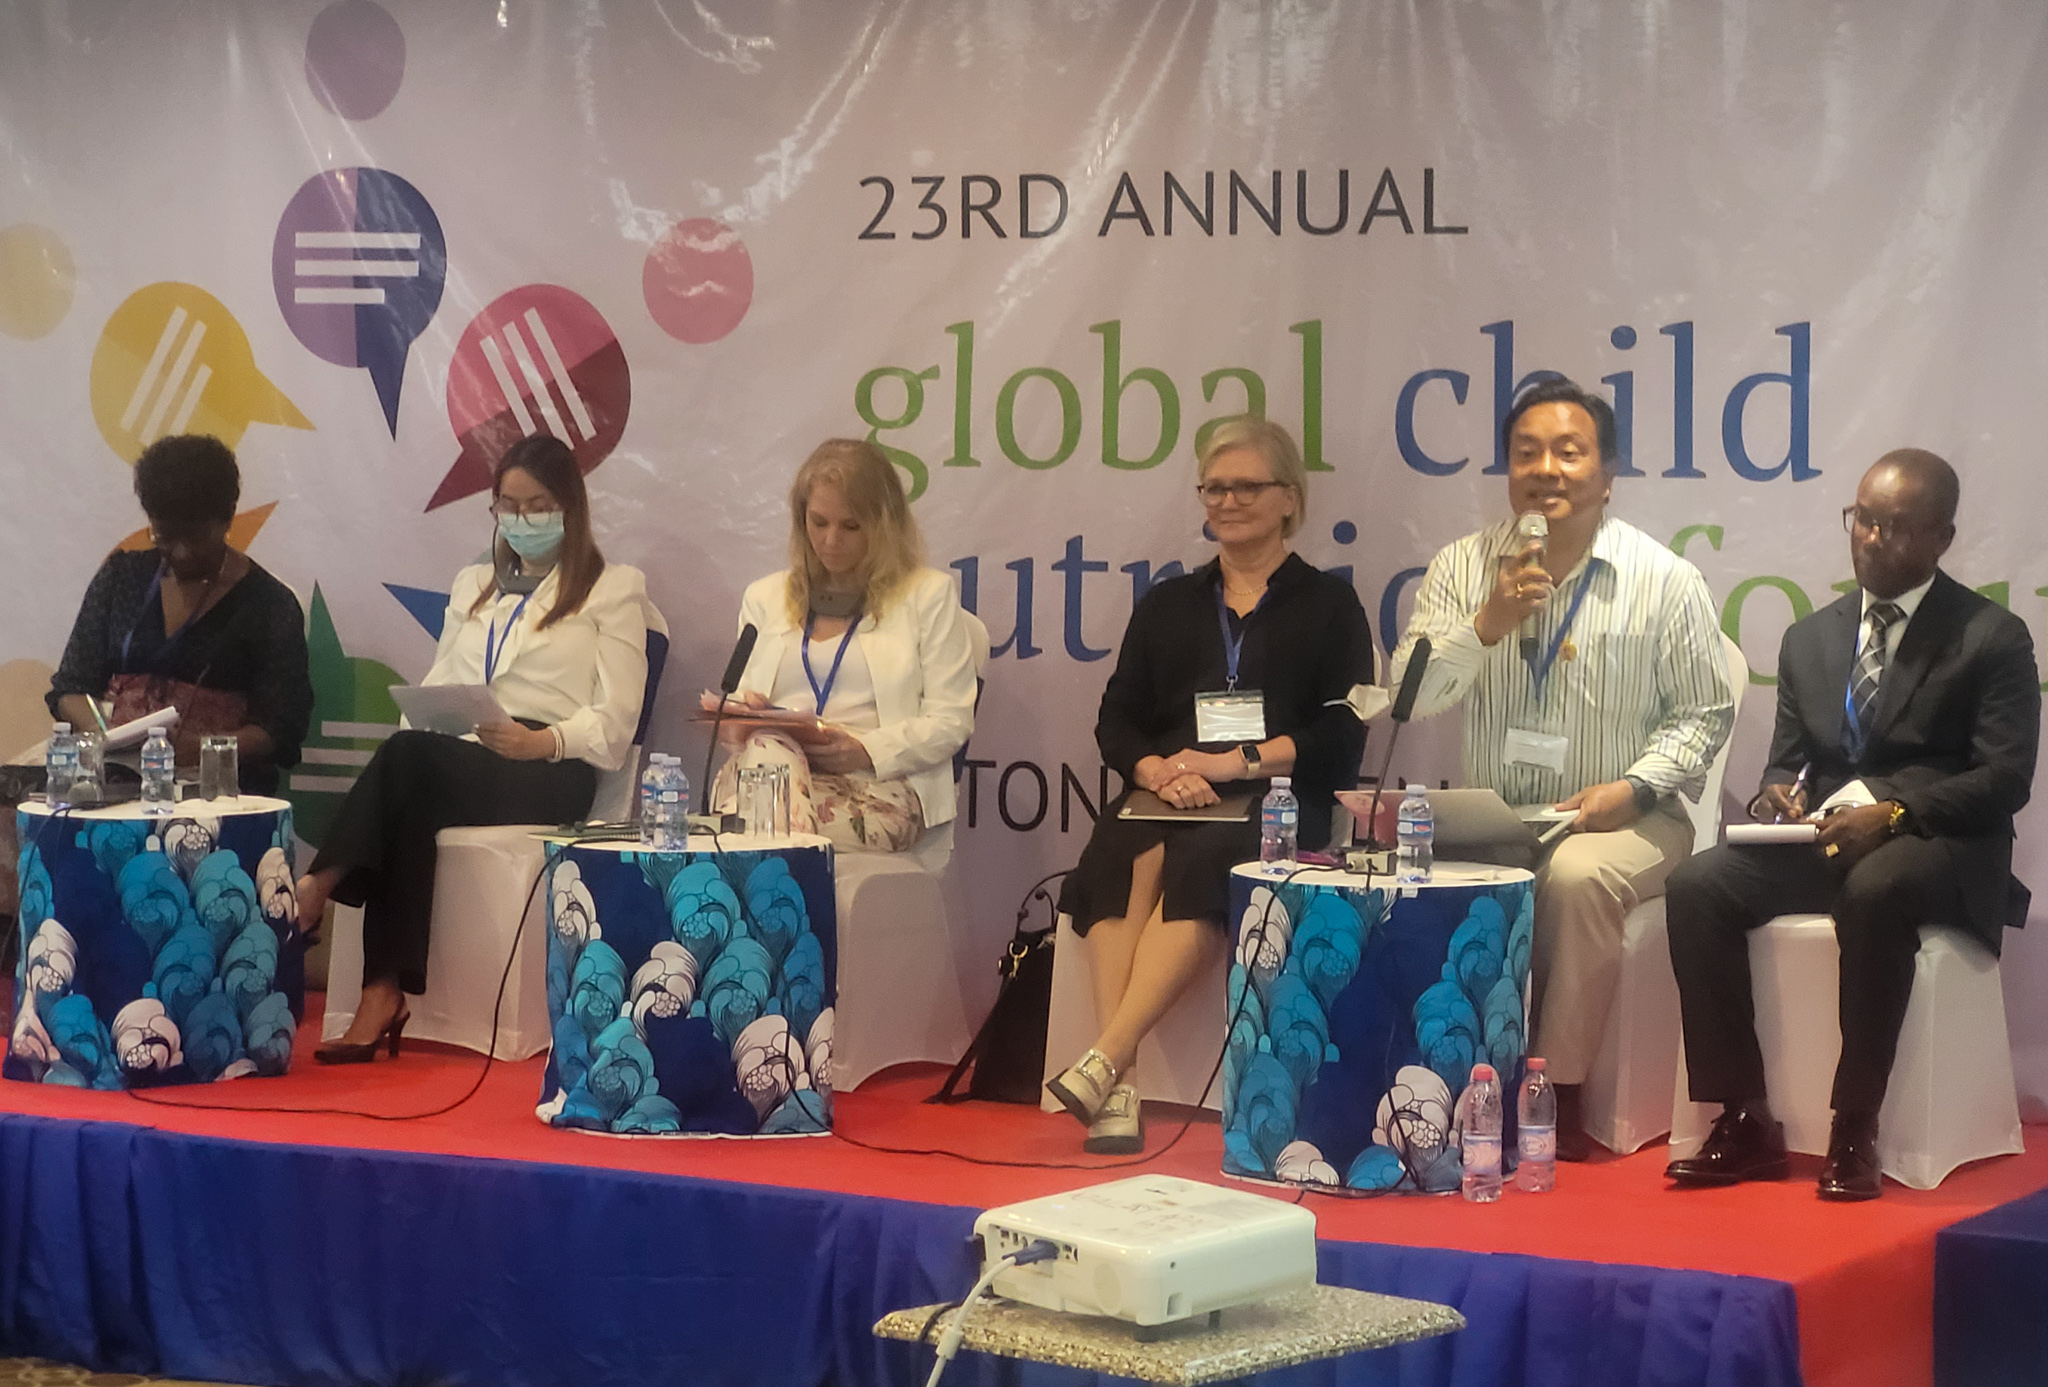 Imagem mostra seis representantes sentados em um palco azul com vermelho com um painel escrito "23rd annual global child nutrition fund" no fundo